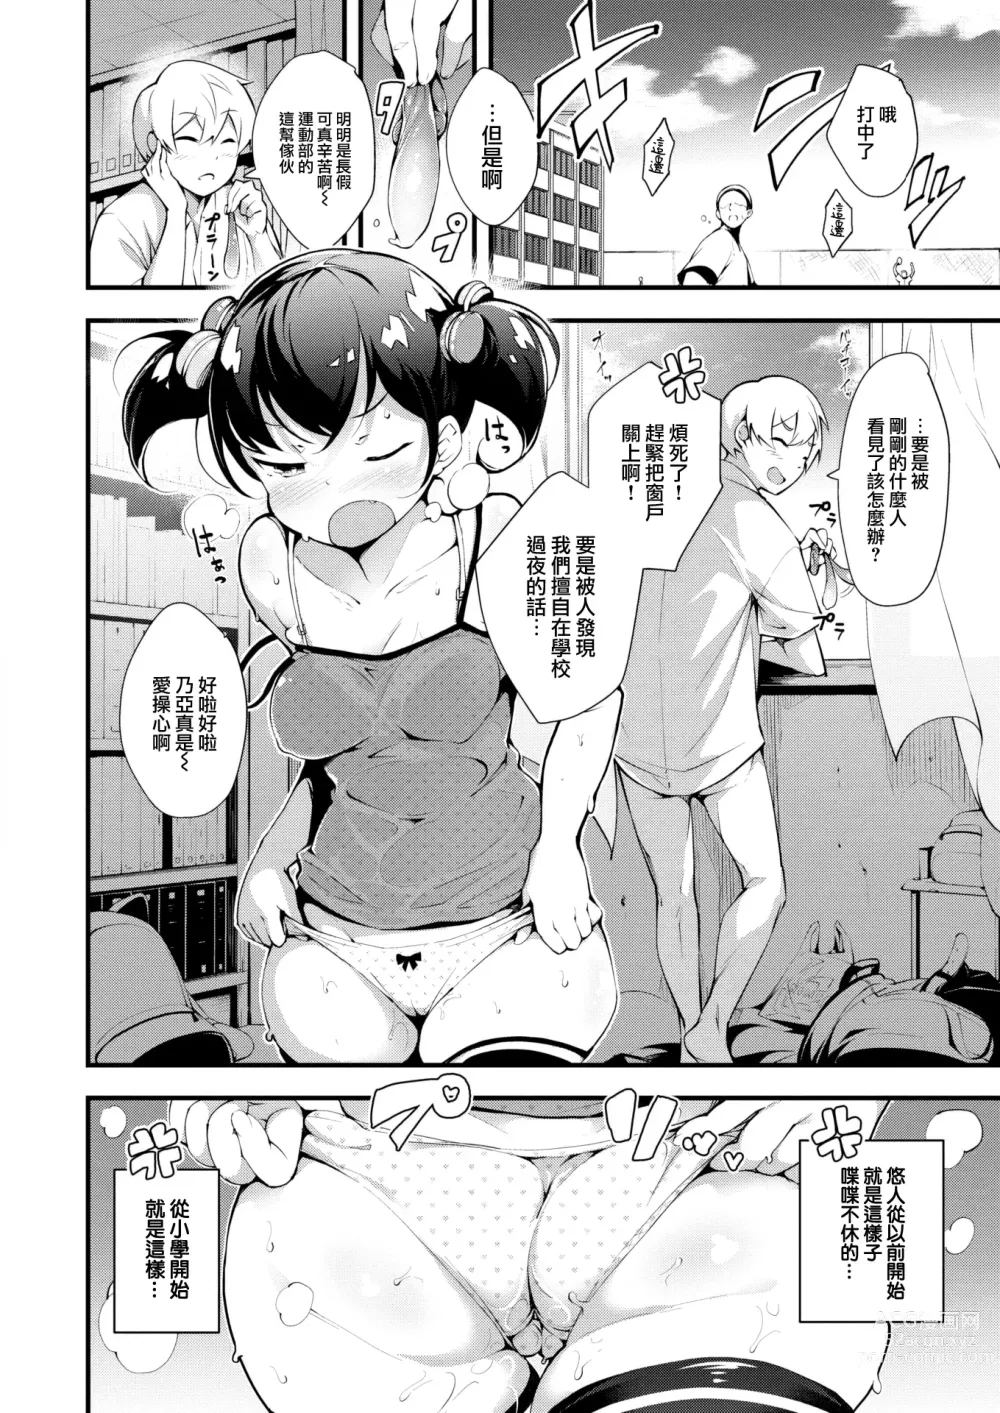 Page 3 of manga Ogata Renkyu no Sugoshikata ni tsuite